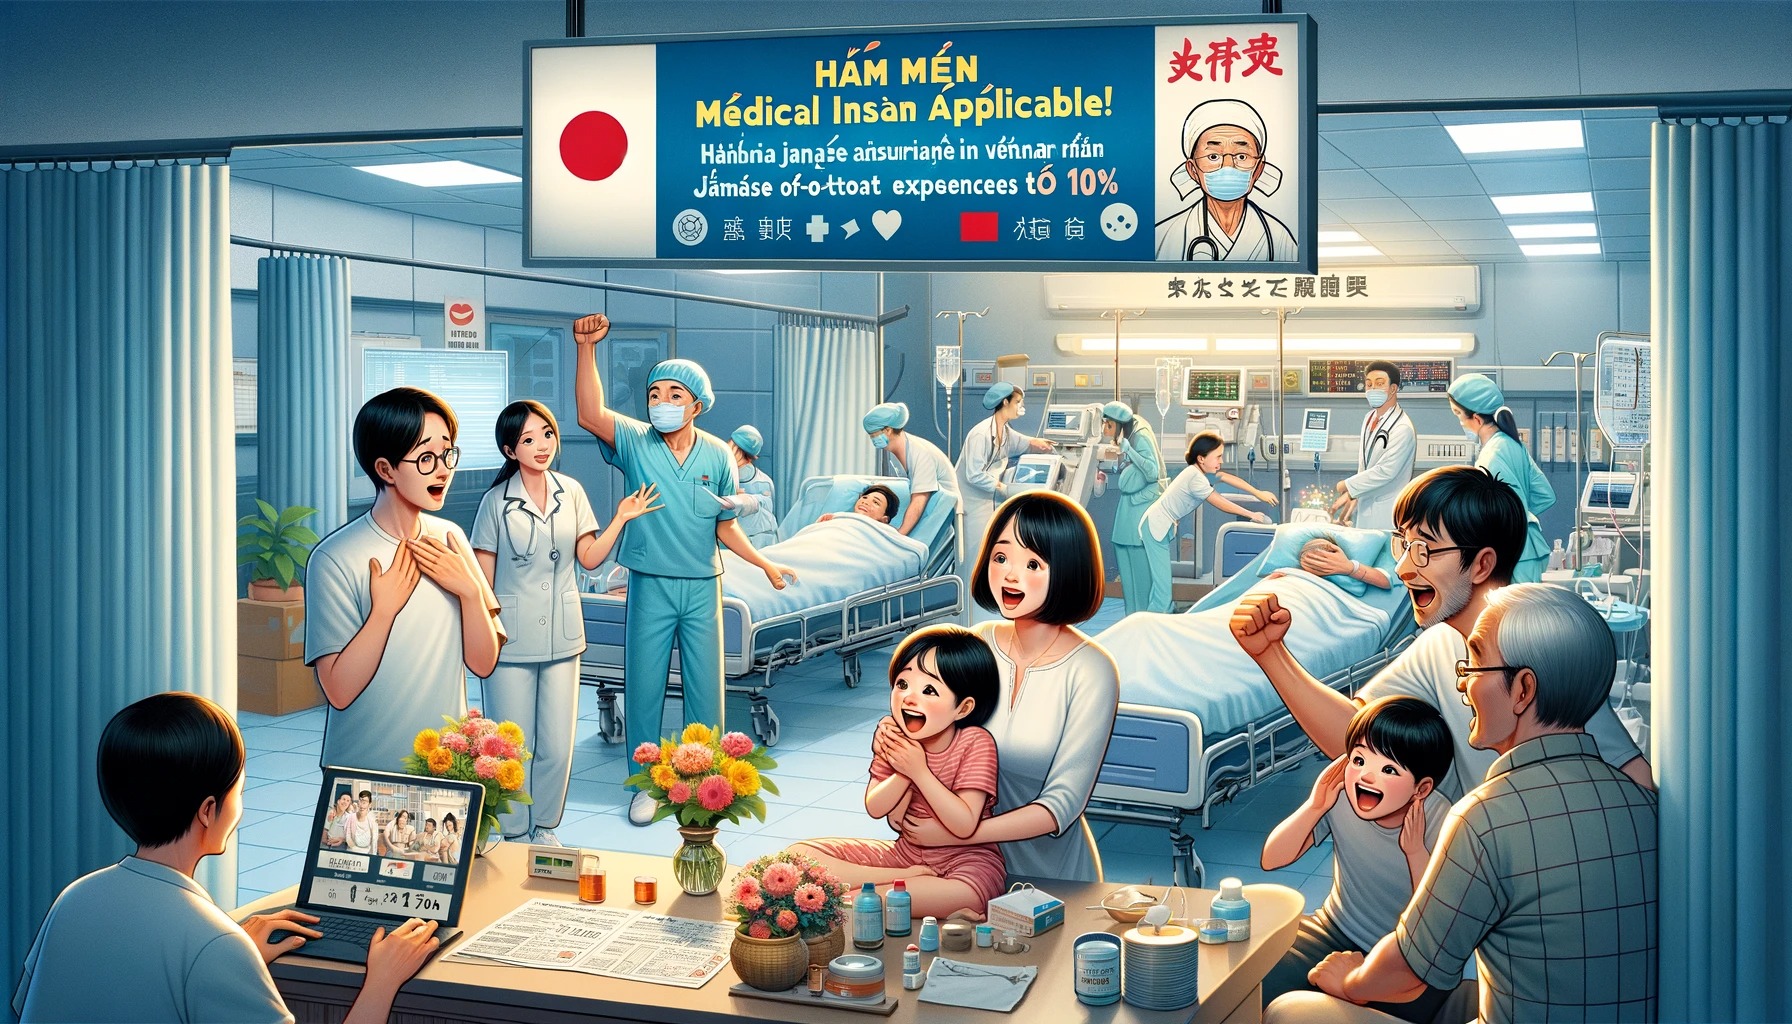 【終国】在日ベトナム人の母国の家族に医療保険適用、ベトナム全ての病院で自己負担1割にｗｗｗ